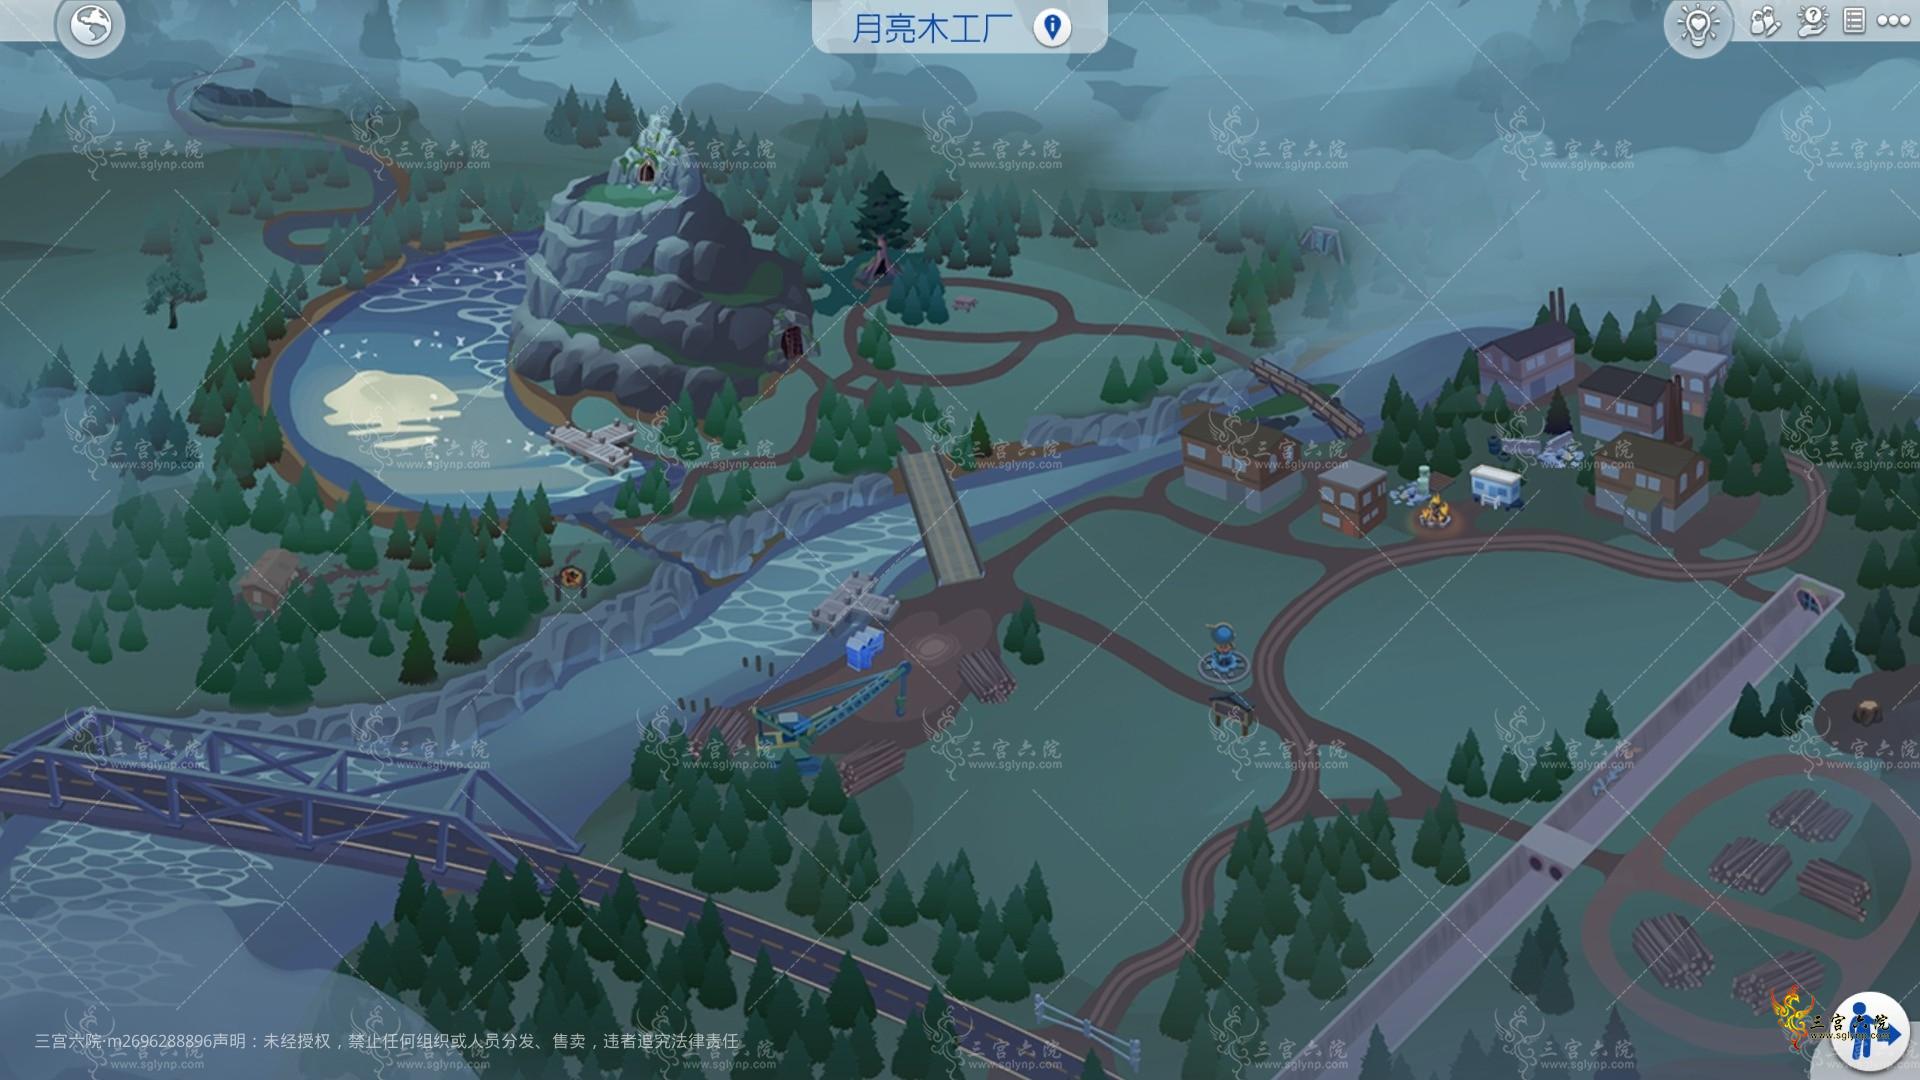 Sims 4 Screenshot 2022.11.22 - 00.35.45.77.png